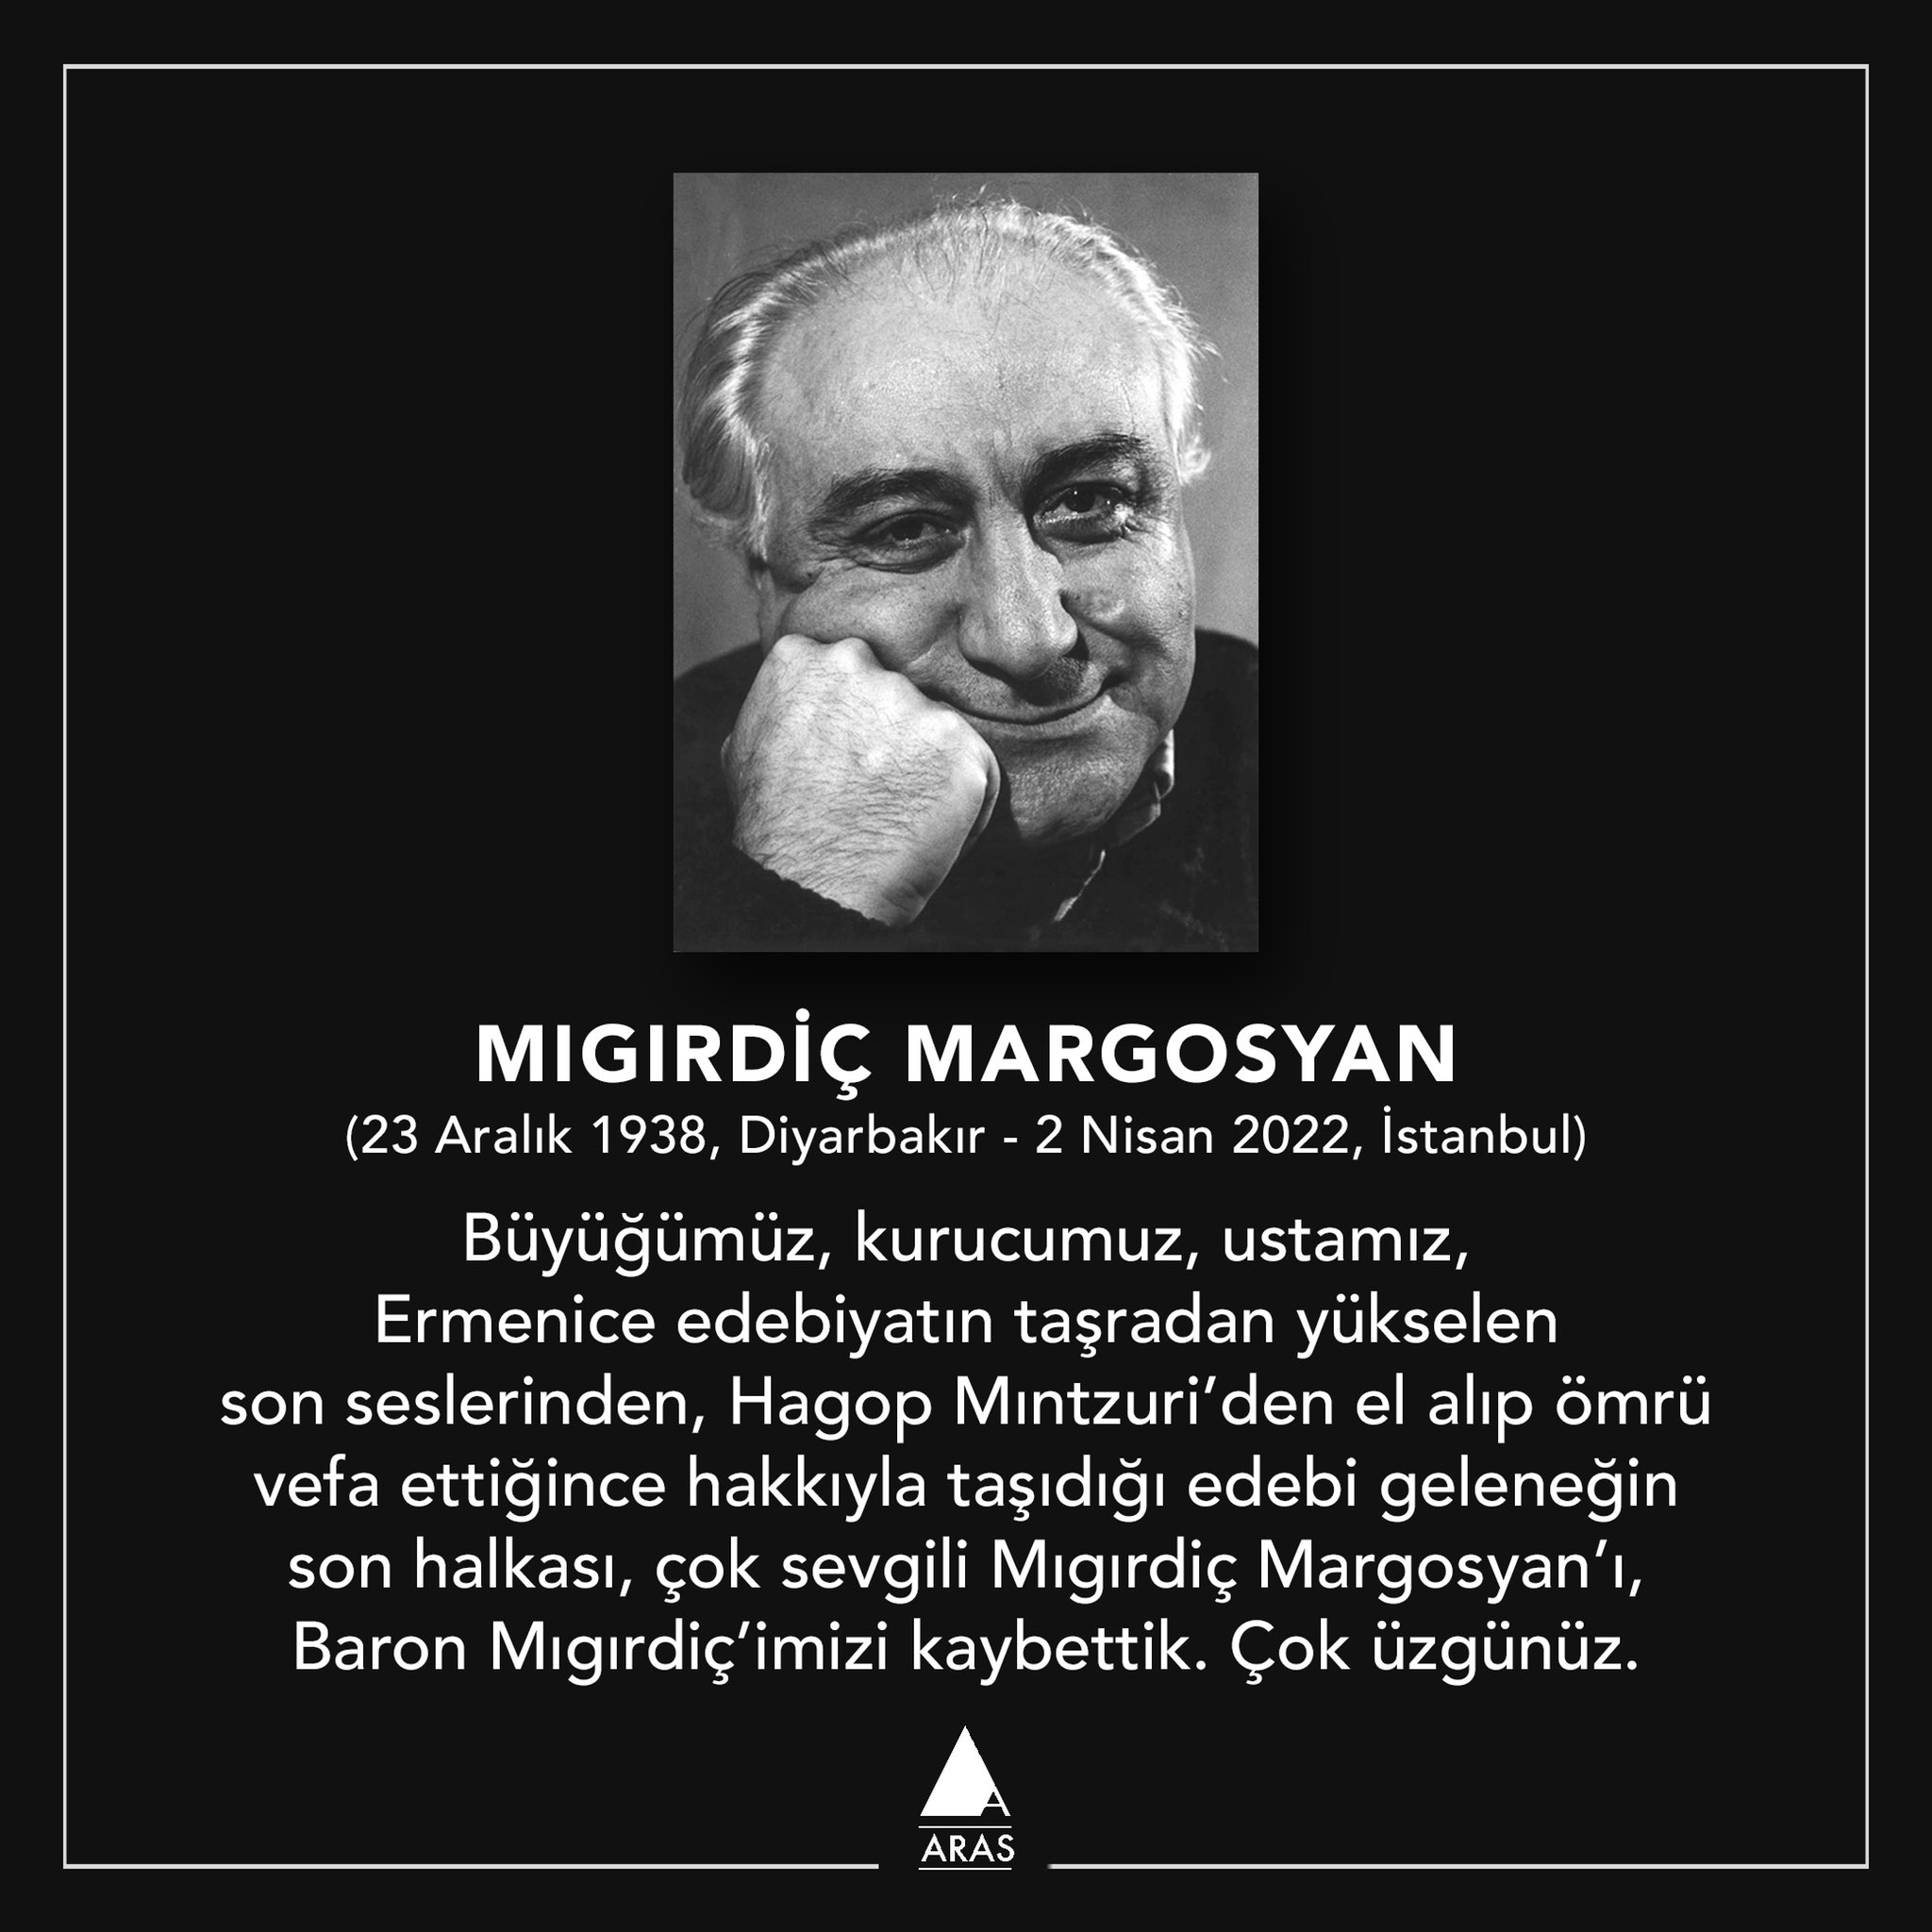 2 Nisan 2022 Mıgırdiç Margosyan ın Vefat Etmesi Uludağ Sözlük Galeri